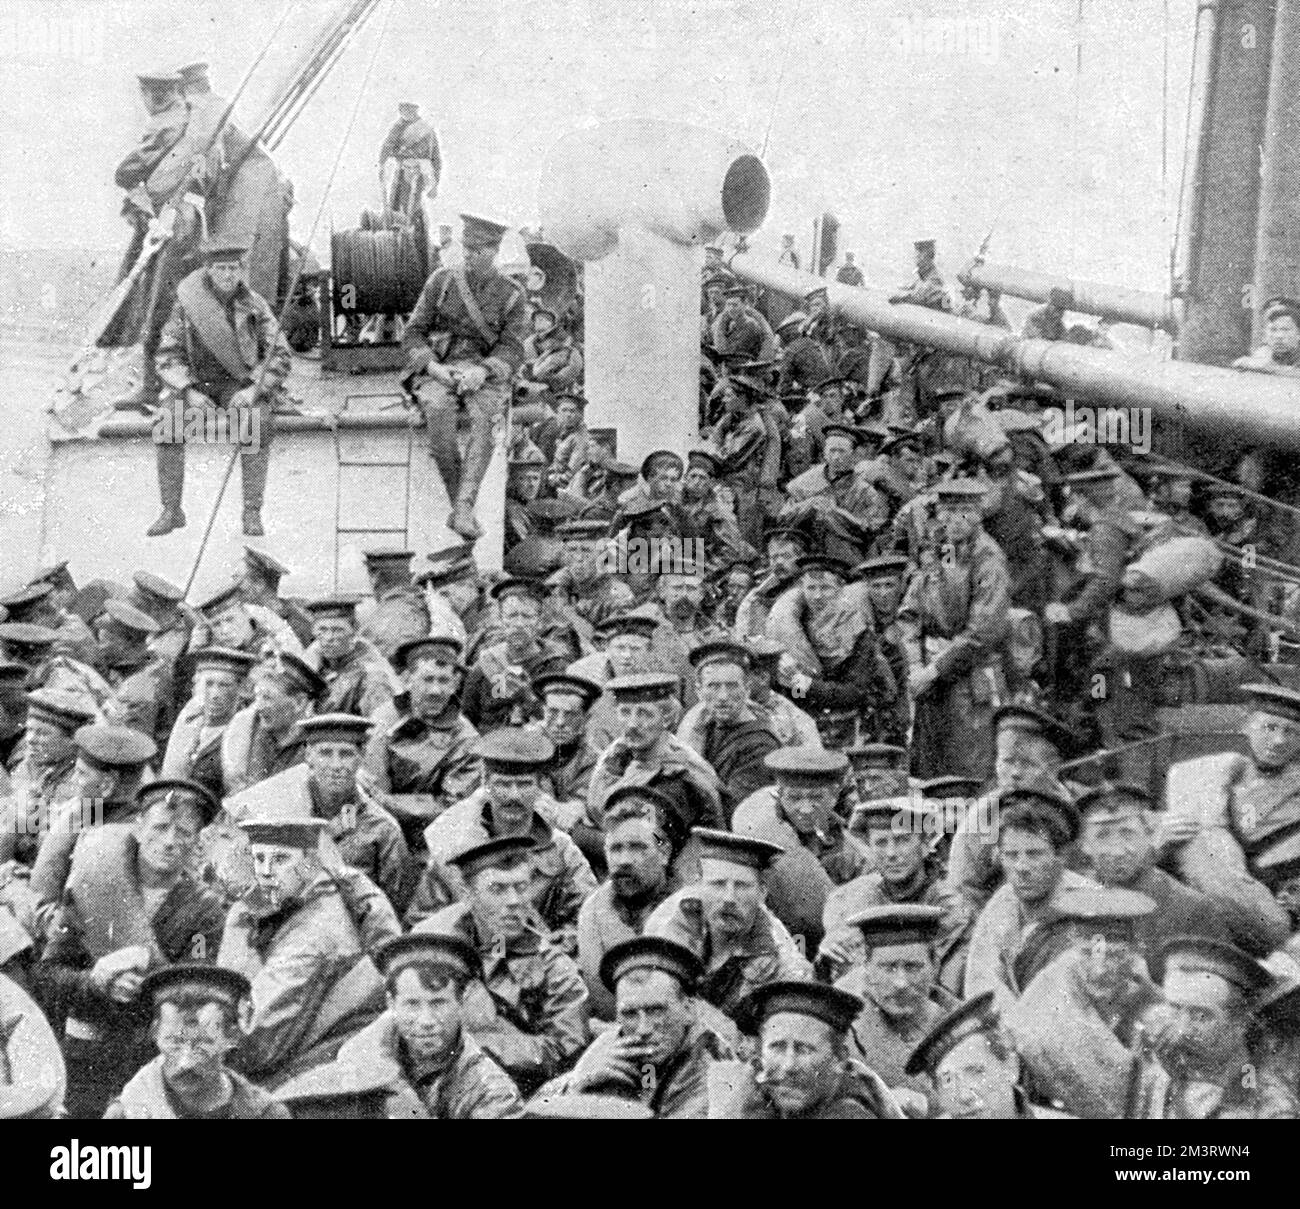 WW1 - la Divisione Navale sulla loro strada per Anversa - 1914. La divisione era composta da una brigata marina e due brigate navali, per un totale di 10.500 uomini. Foto Stock